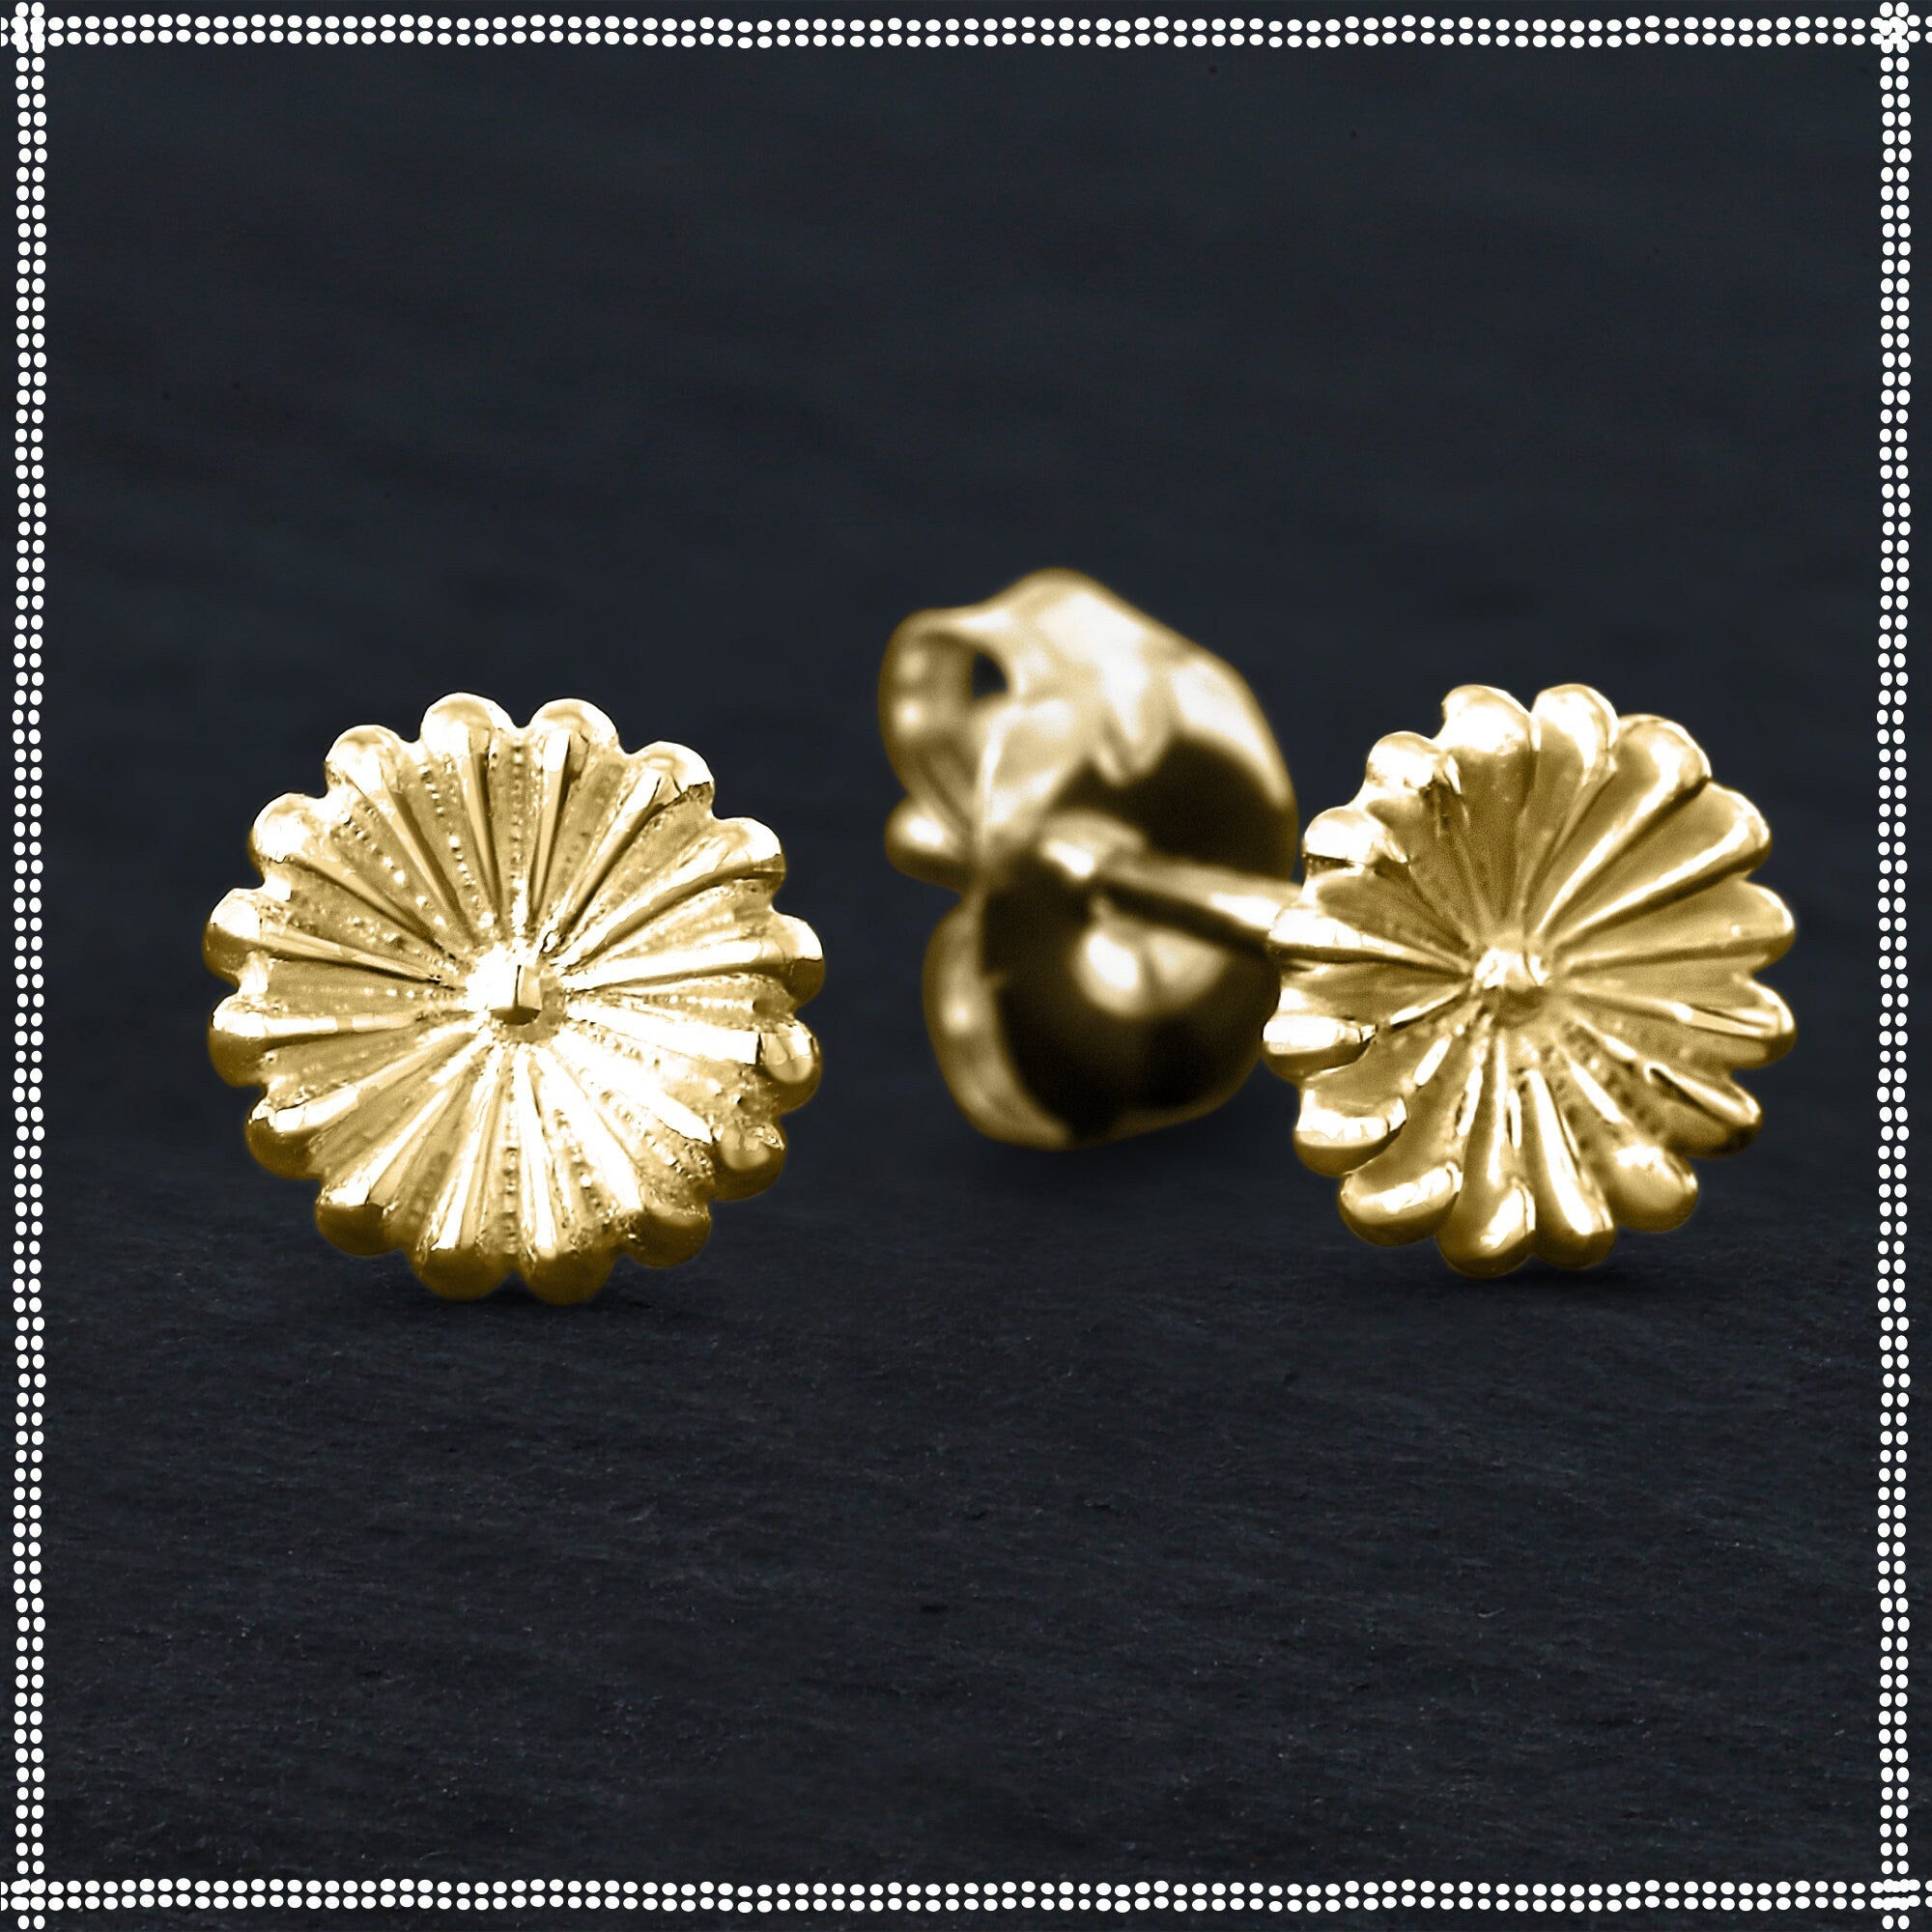 Buy Tiny Leaf Earrings in 22K at Nancy Troske Jewelry for only $495.00